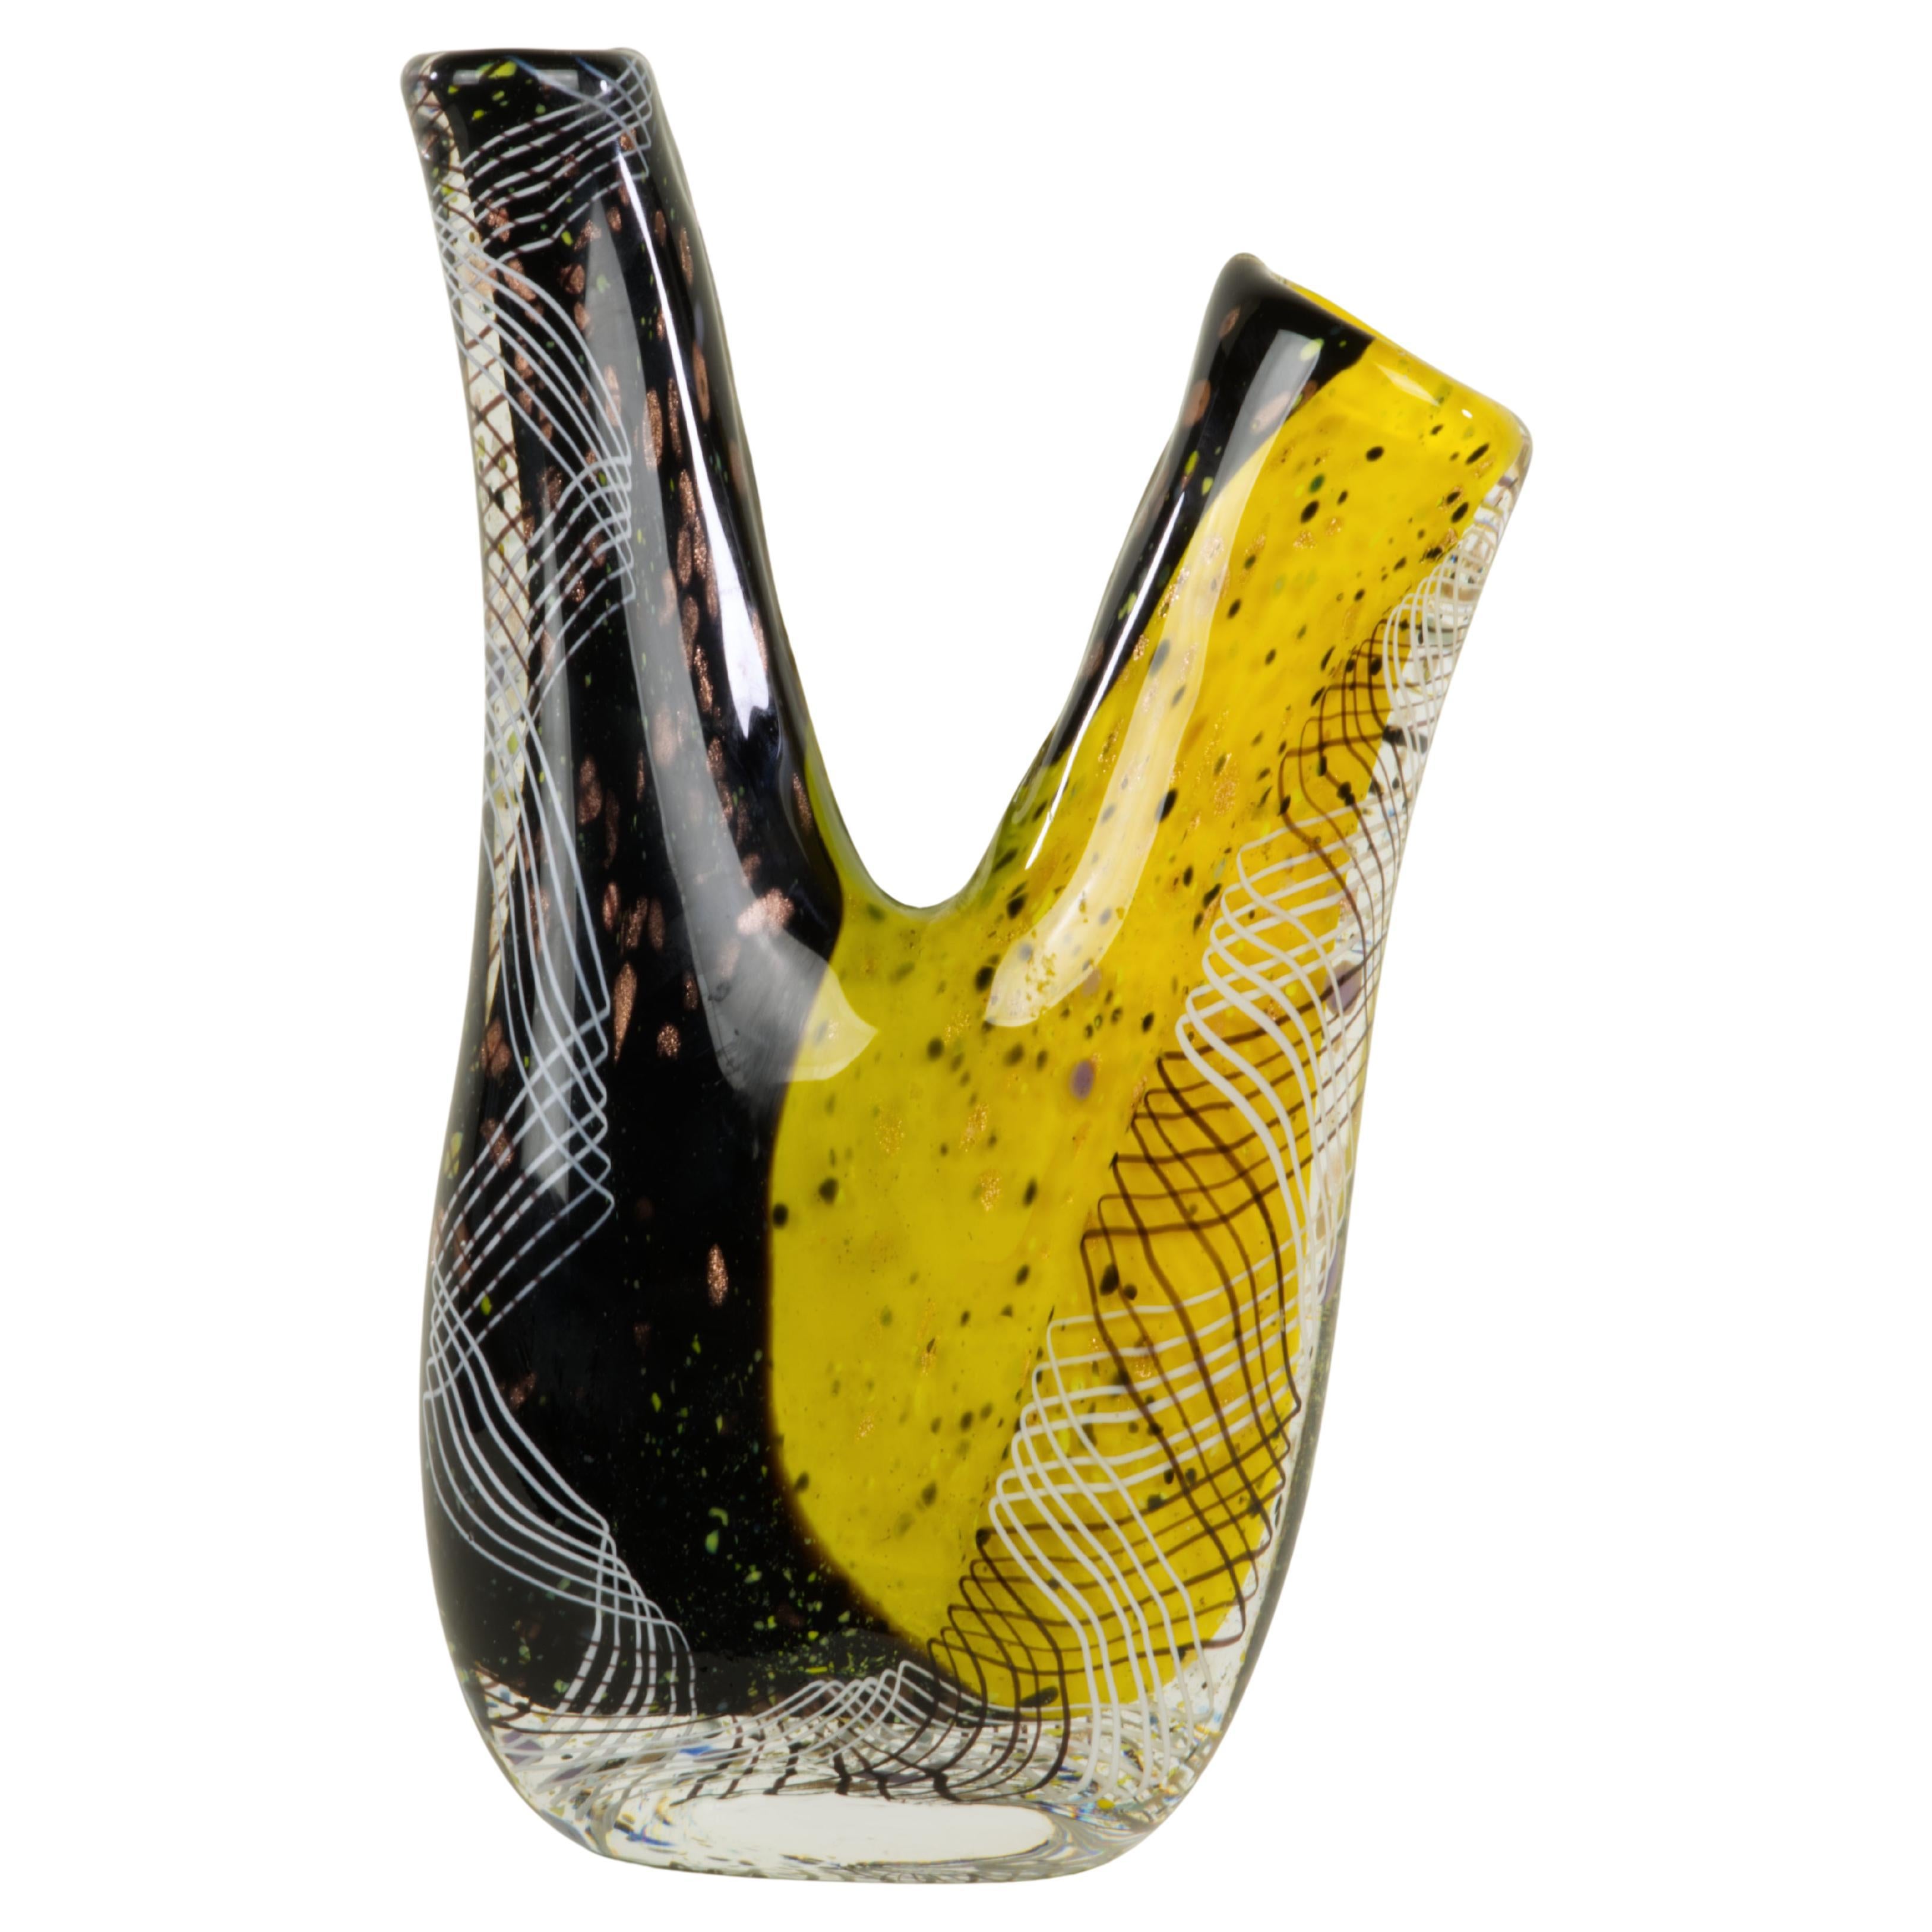 Le vase en verre d'art de style Murano a une forme inhabituelle à double bec et est décoré de tourbillons de lignes noires et blanches et de motifs abstraits de points et de mouchetures d'or sur la base colorée noire et jaune. La signature de